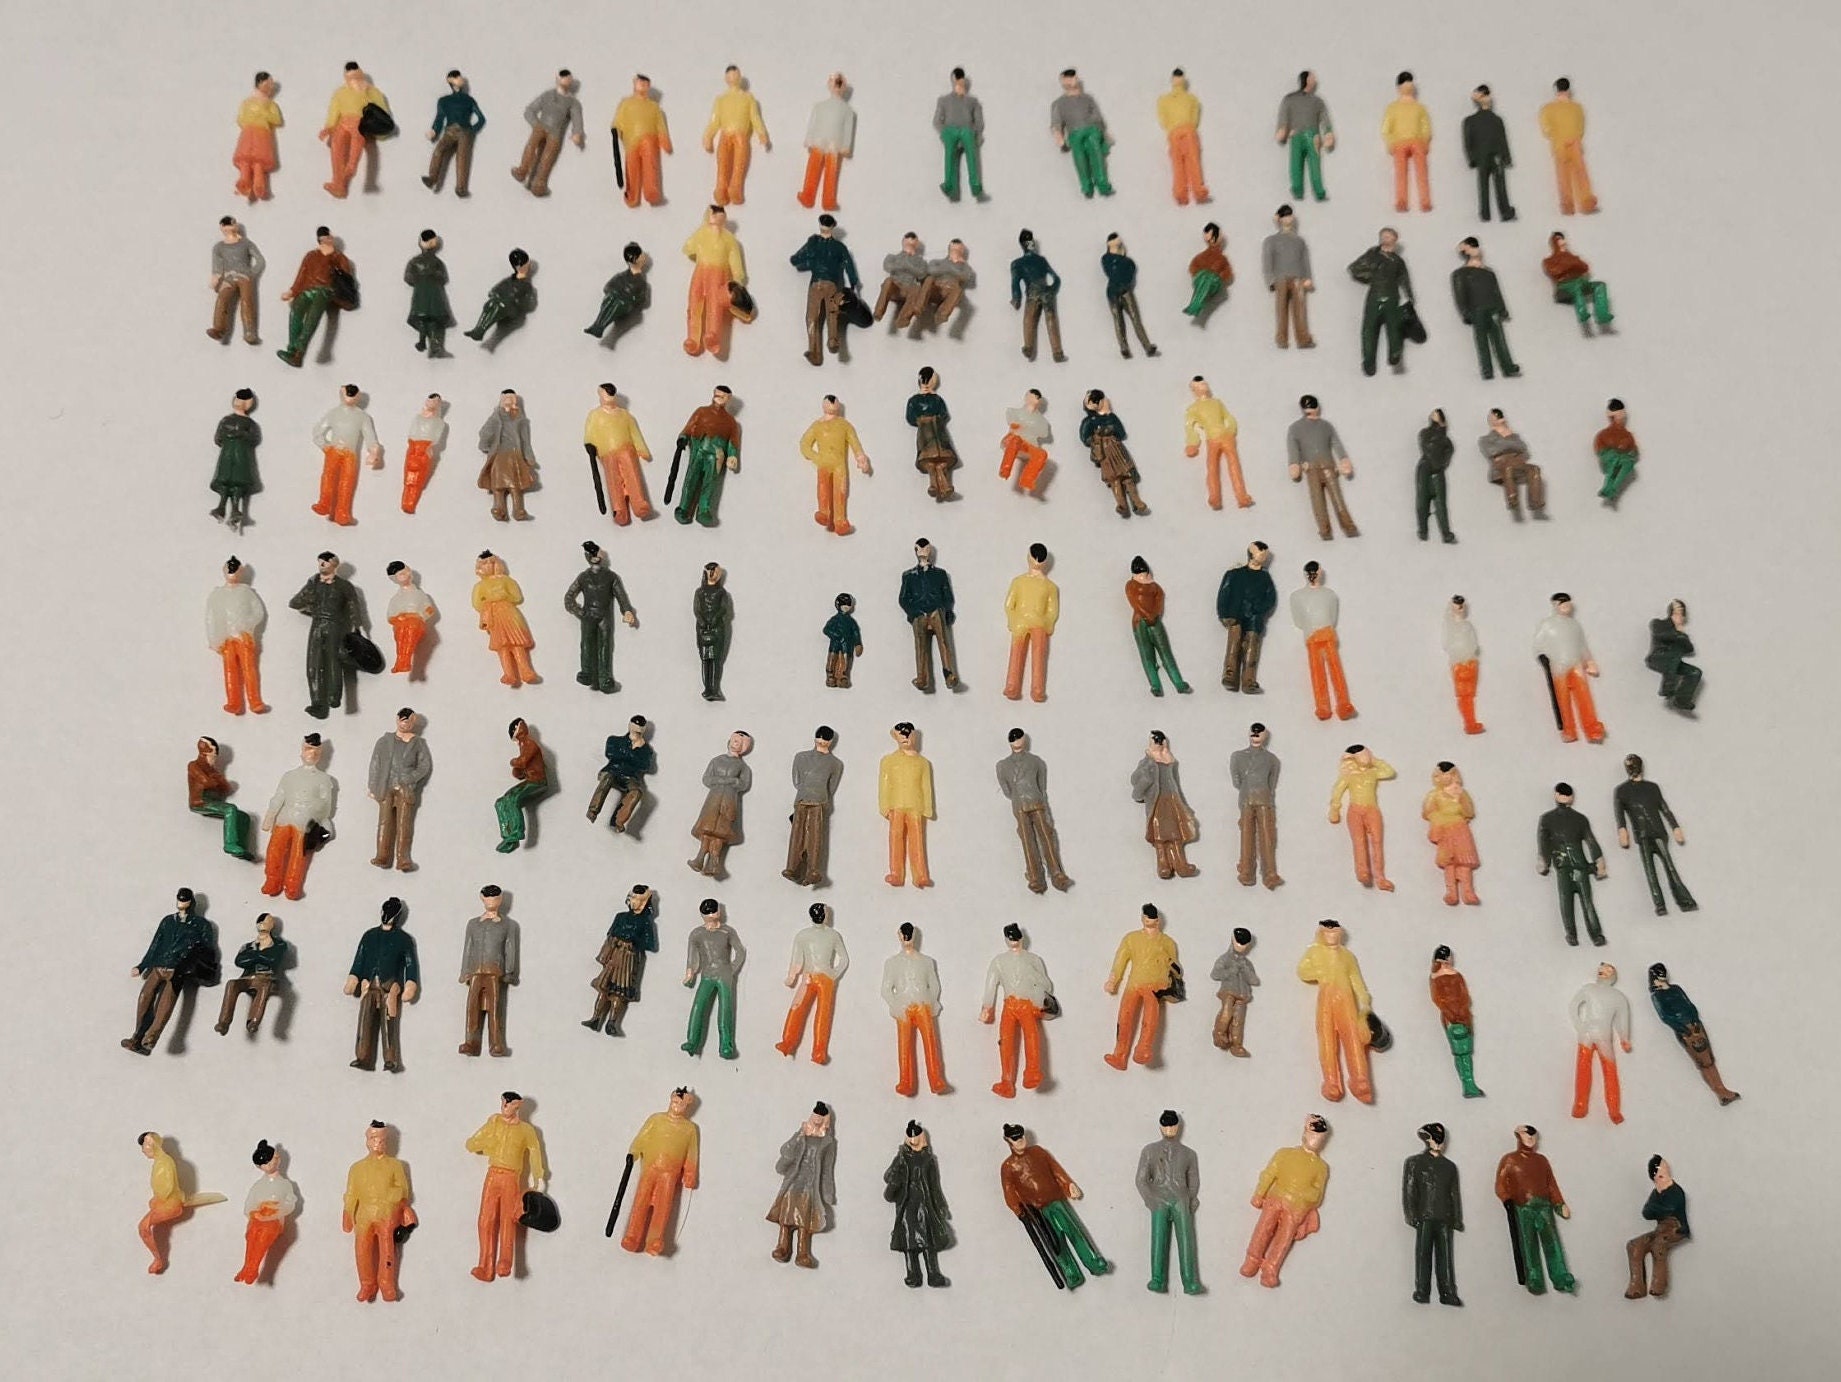 Artist Uses Miniature Railway Figurines to Create Lifelike Images